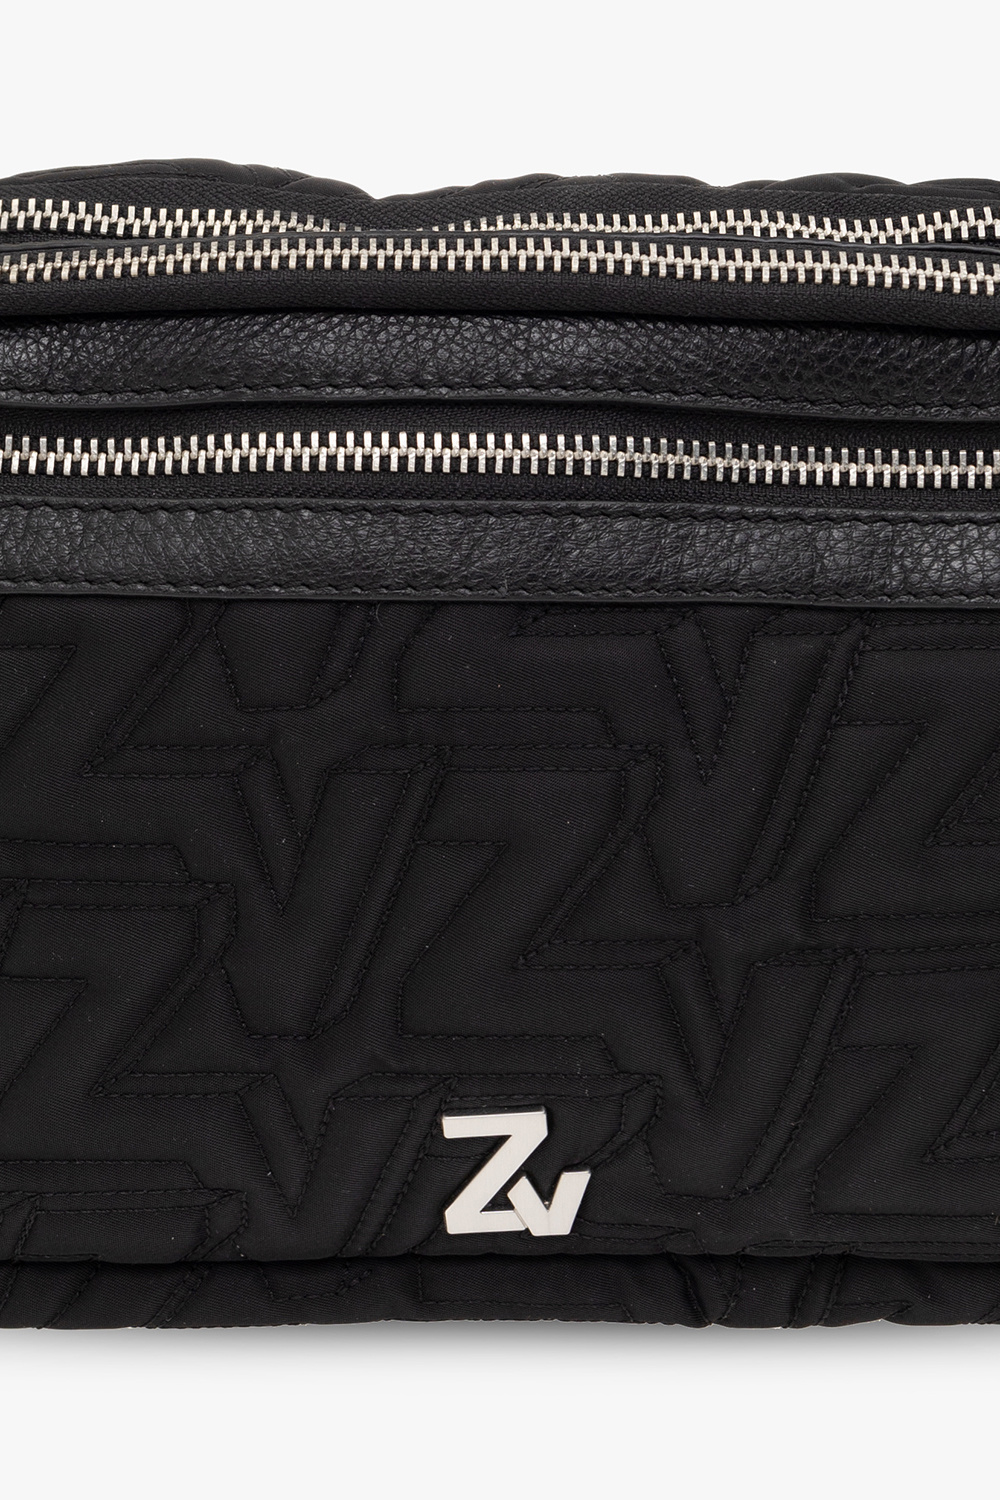 Zadig & Voltaire BECKHAM bag & Towel Combo